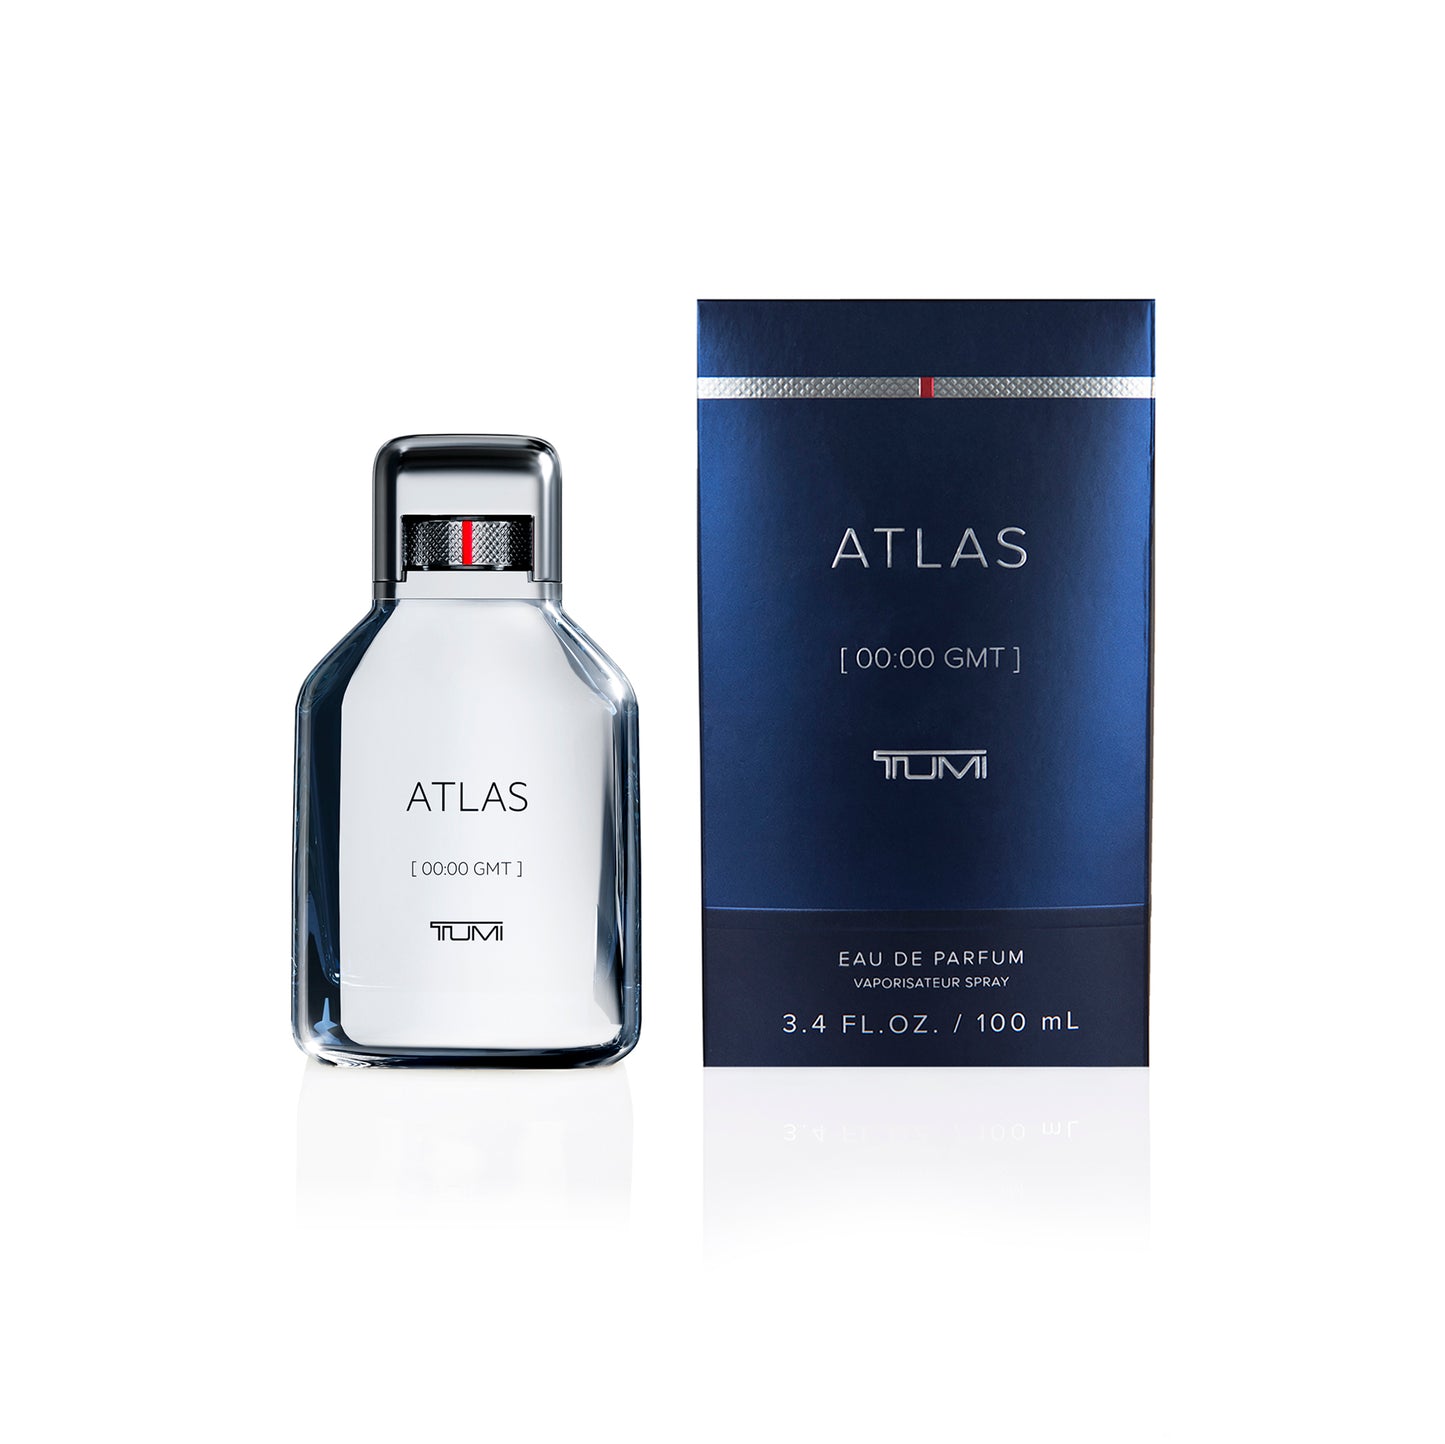 ATLAS [00:00 GMT] TUMI - 3.4oz Eau de Parfum